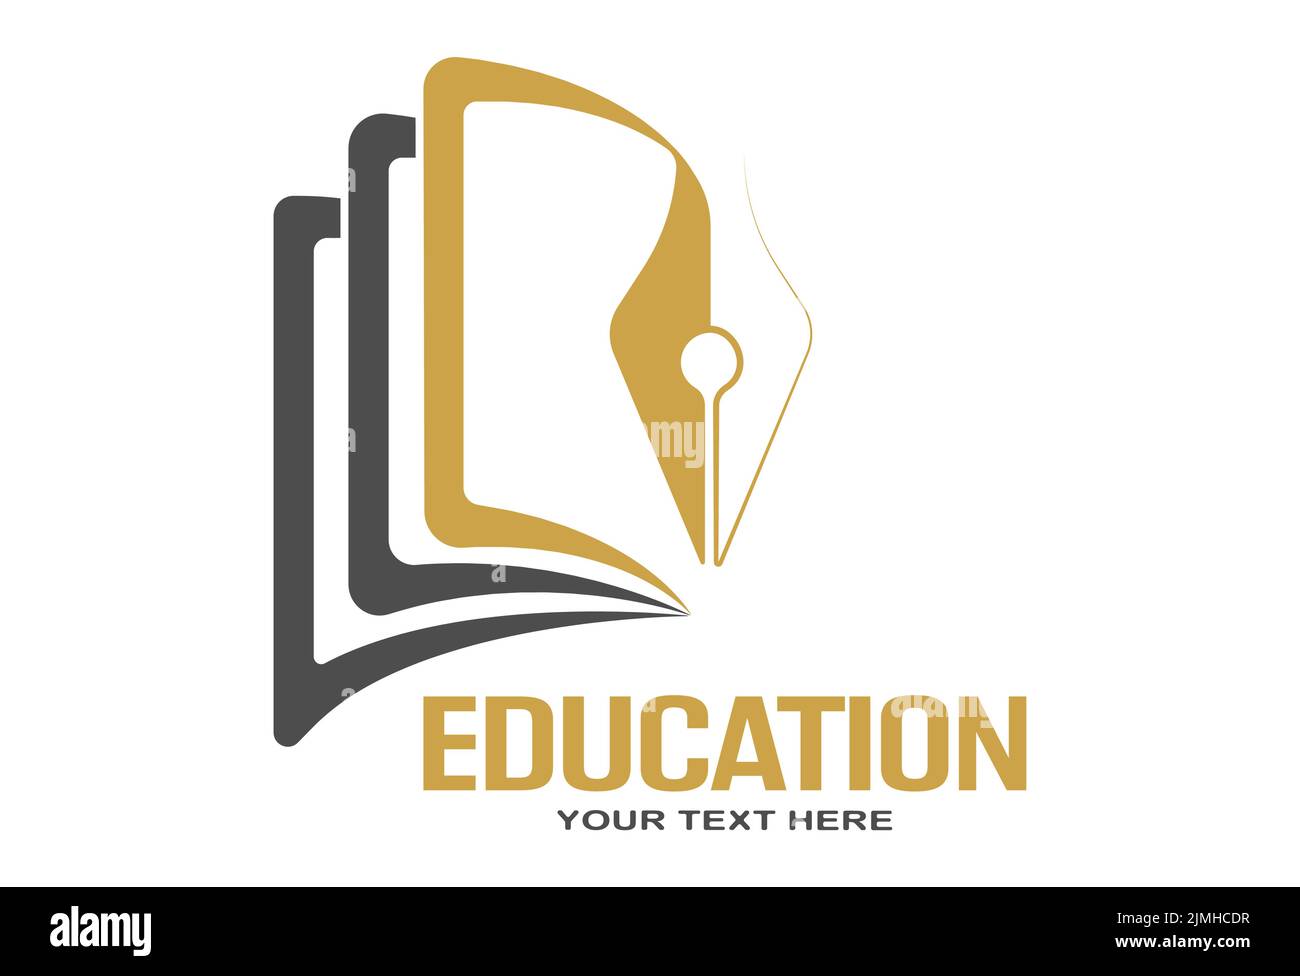 Istruzione. Modello di logo con un libro aperto e una penna. Un esempio per siti web, applicazioni e idee creative. Stile piatto. Illustrazione Vettoriale